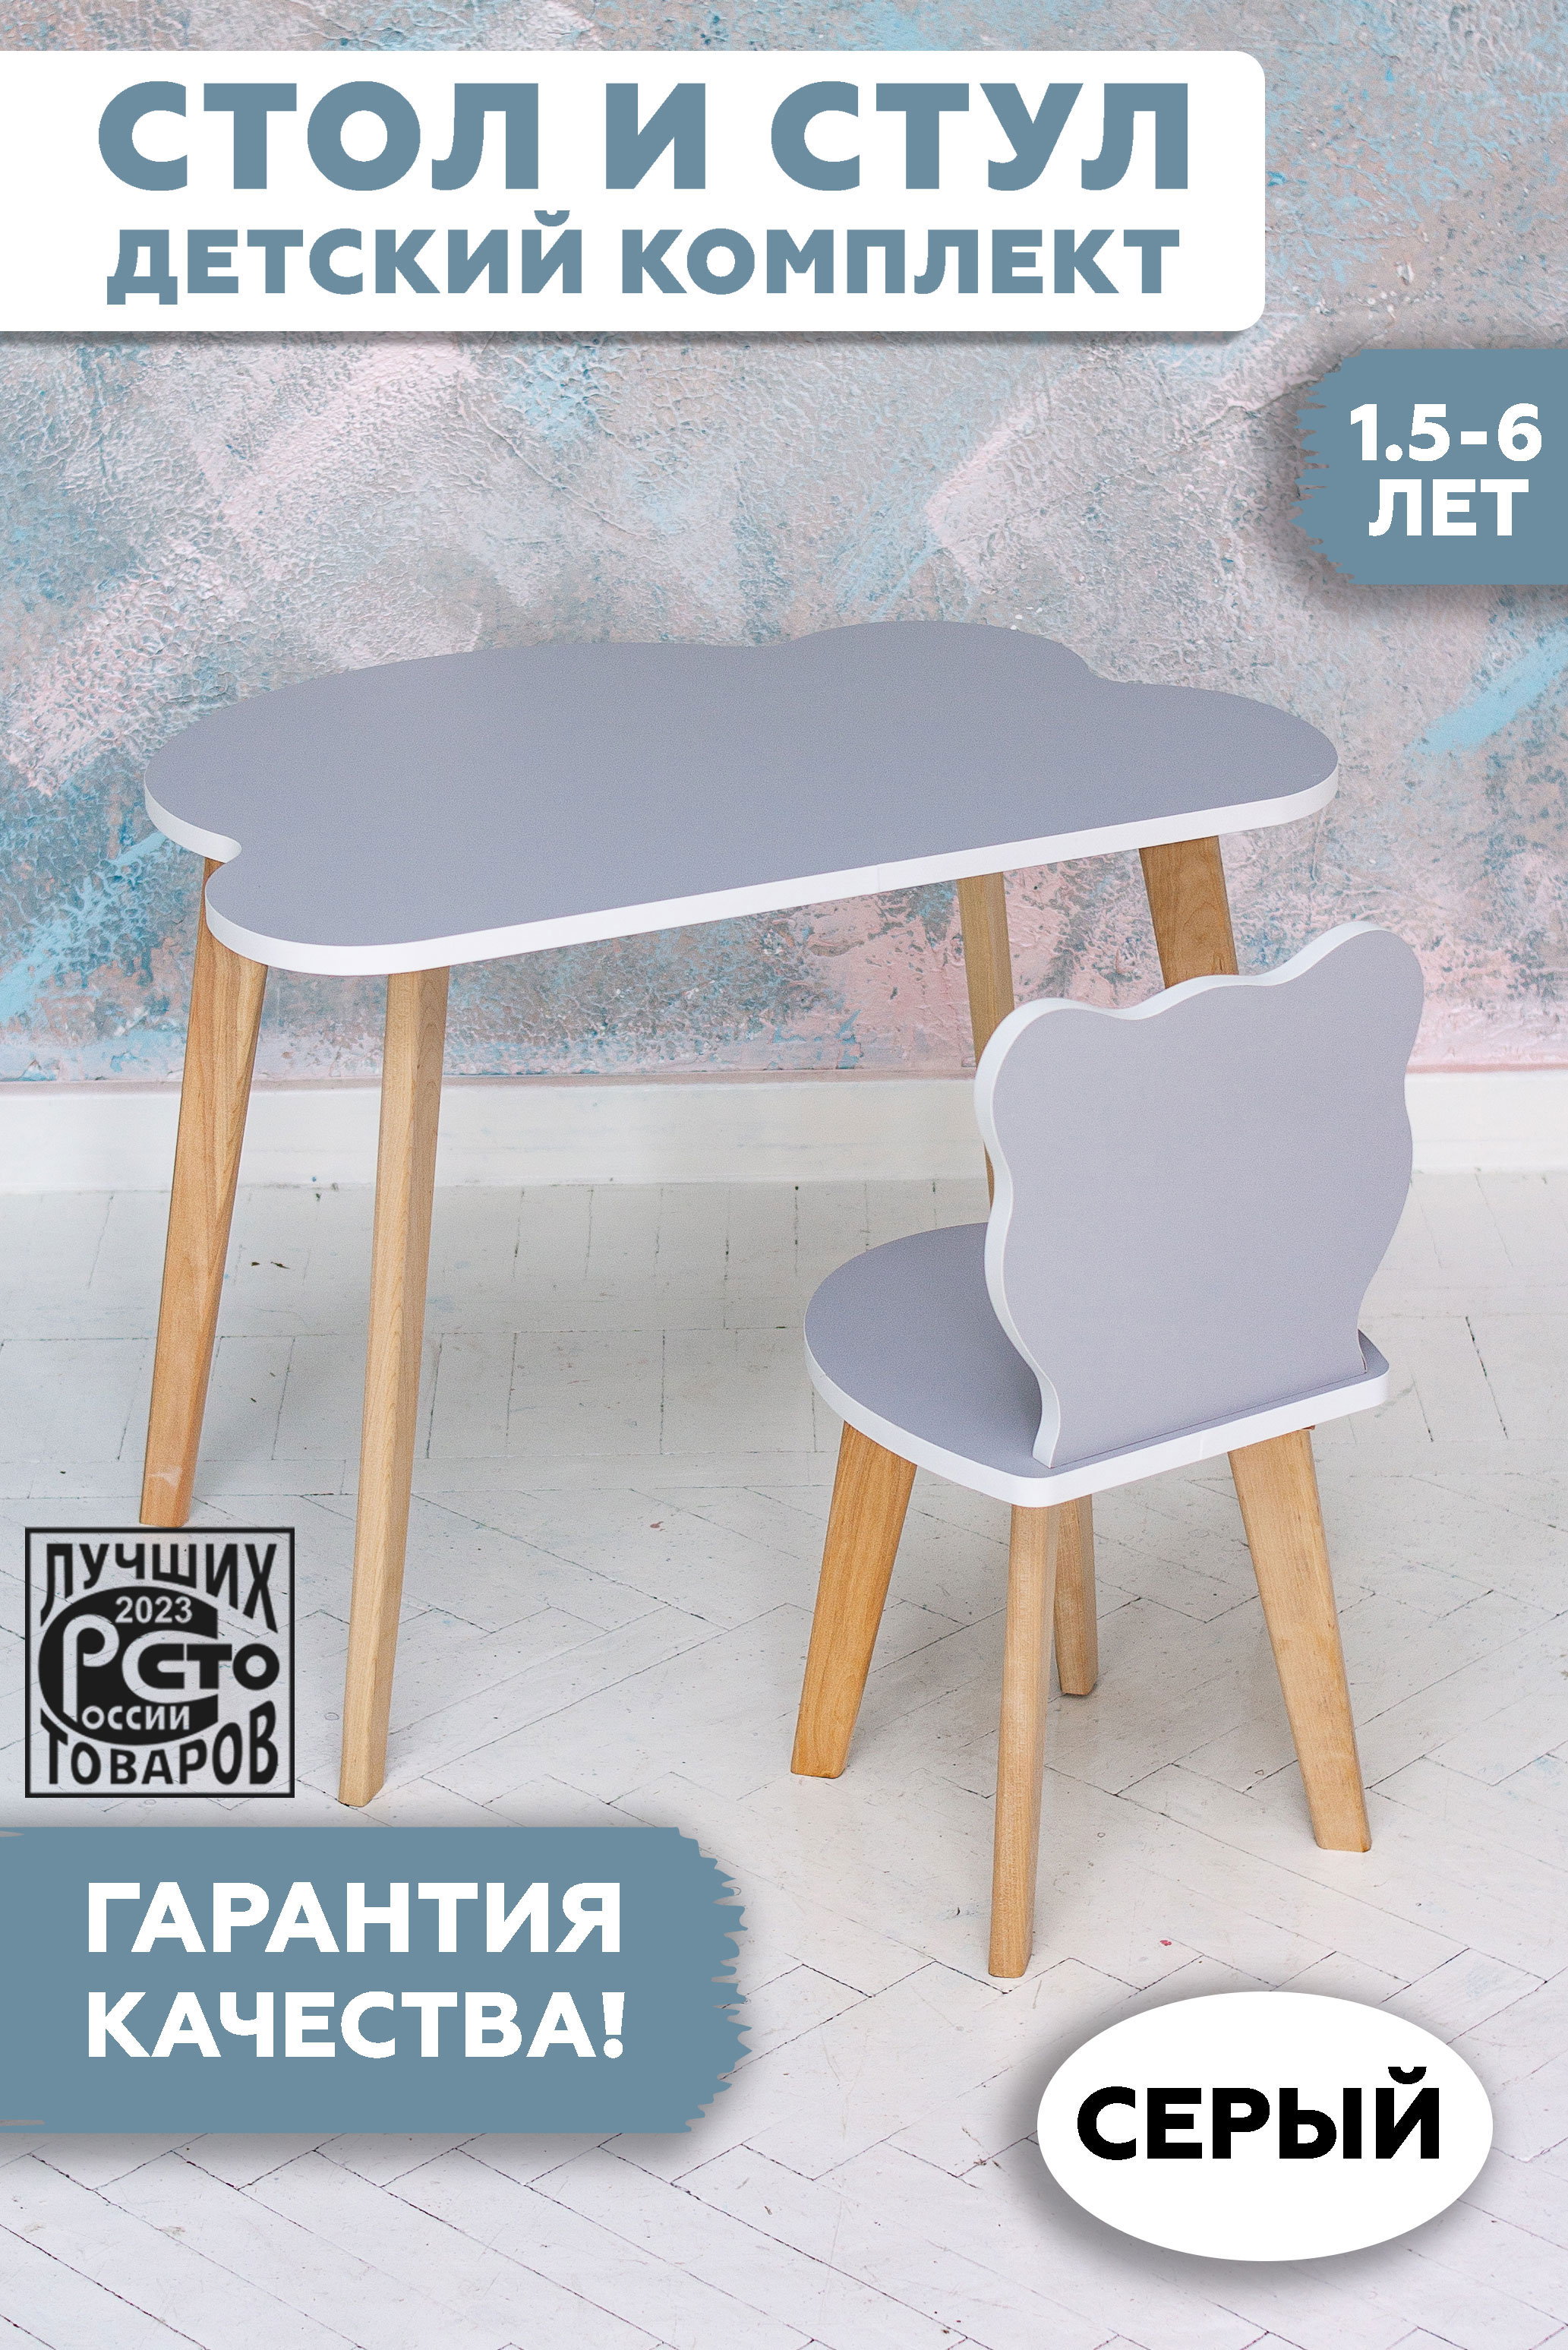 Комплект детской мебели RuLes стул мишка и стол облако детский, серый 12622 ника детский комплект мебели мимимишки c игрой